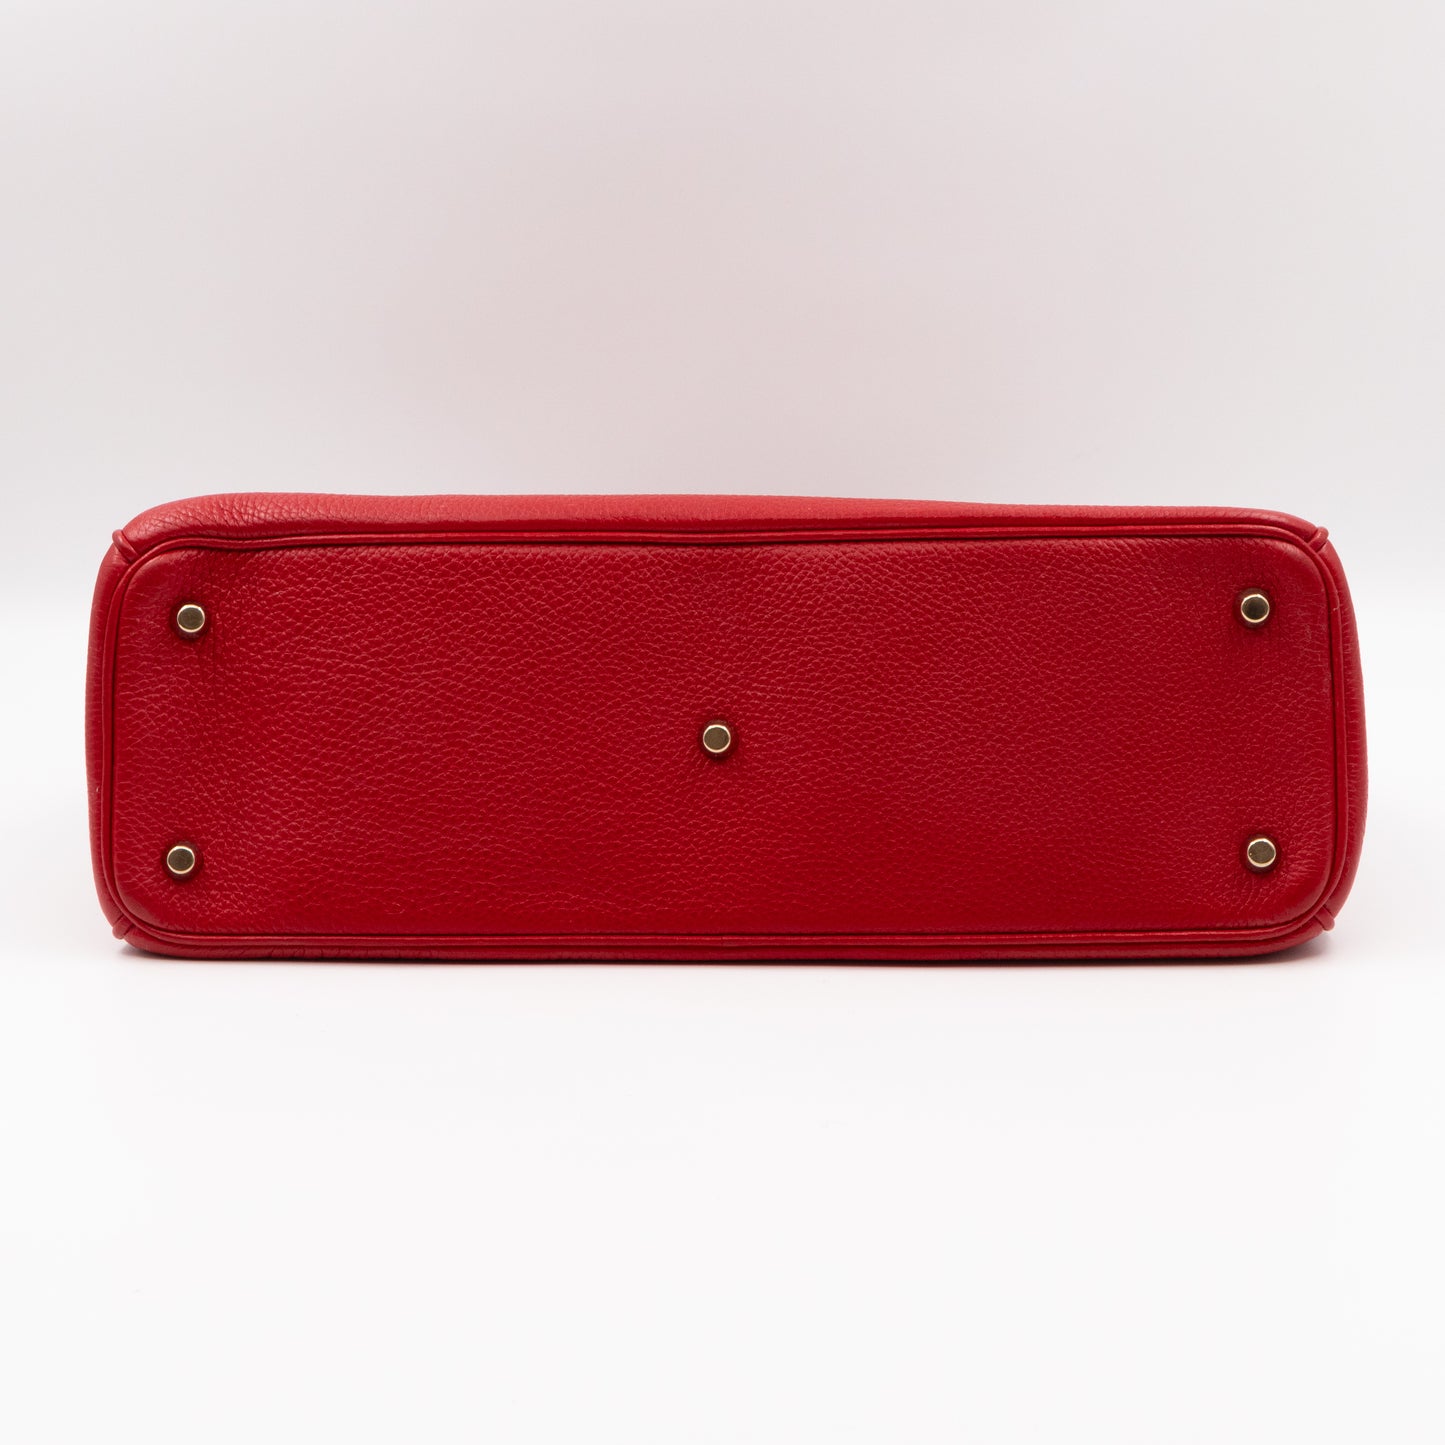 Diorissimo Medium Red Leather